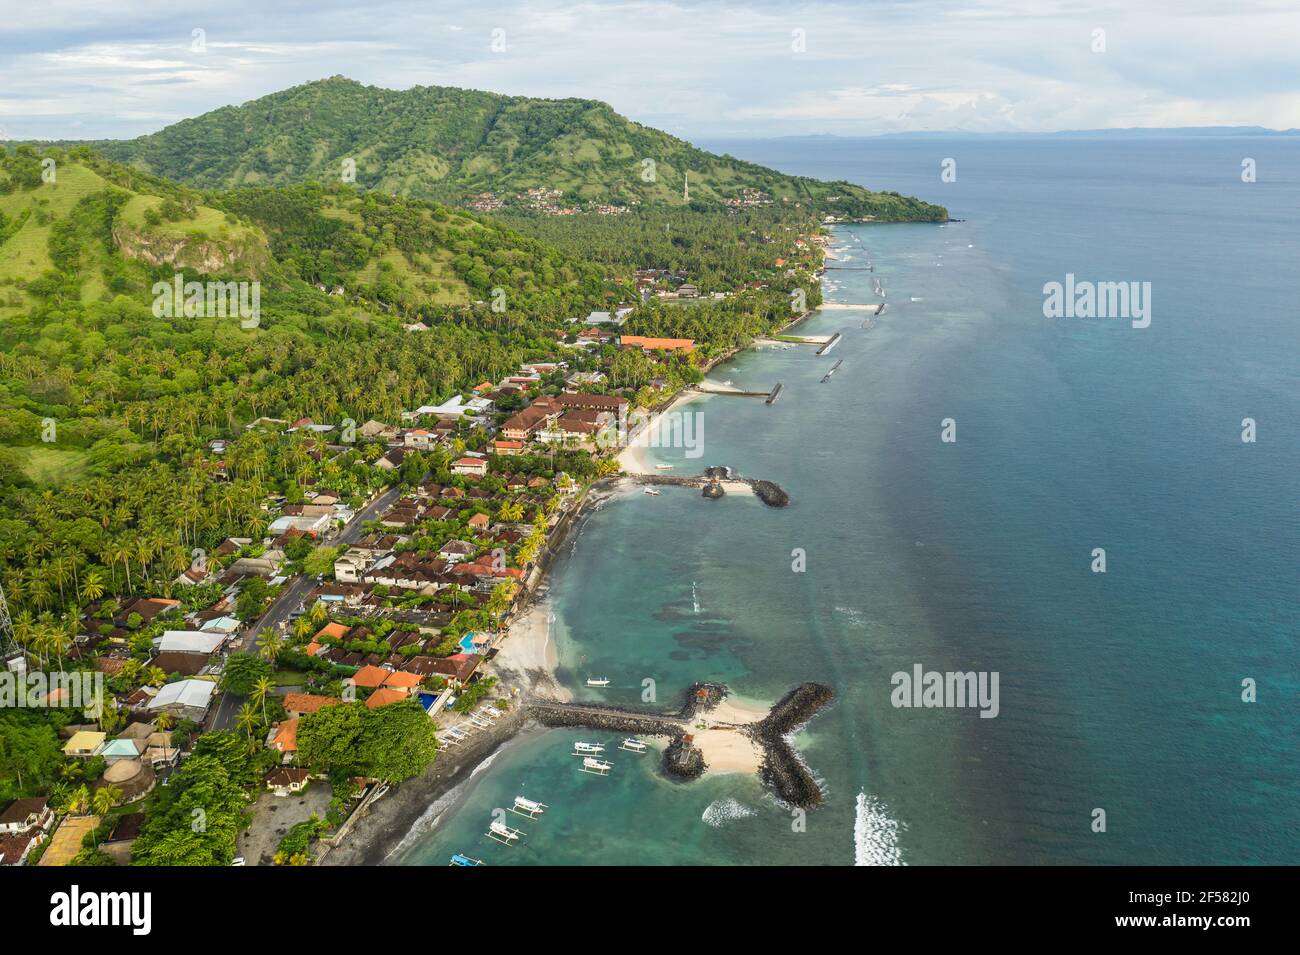 Vista aerea della città di Candidasa e della spiaggia nella parte orientale di Bali in Indonesia. Si tratta di un popolare resort sulla spiaggia. Foto Stock